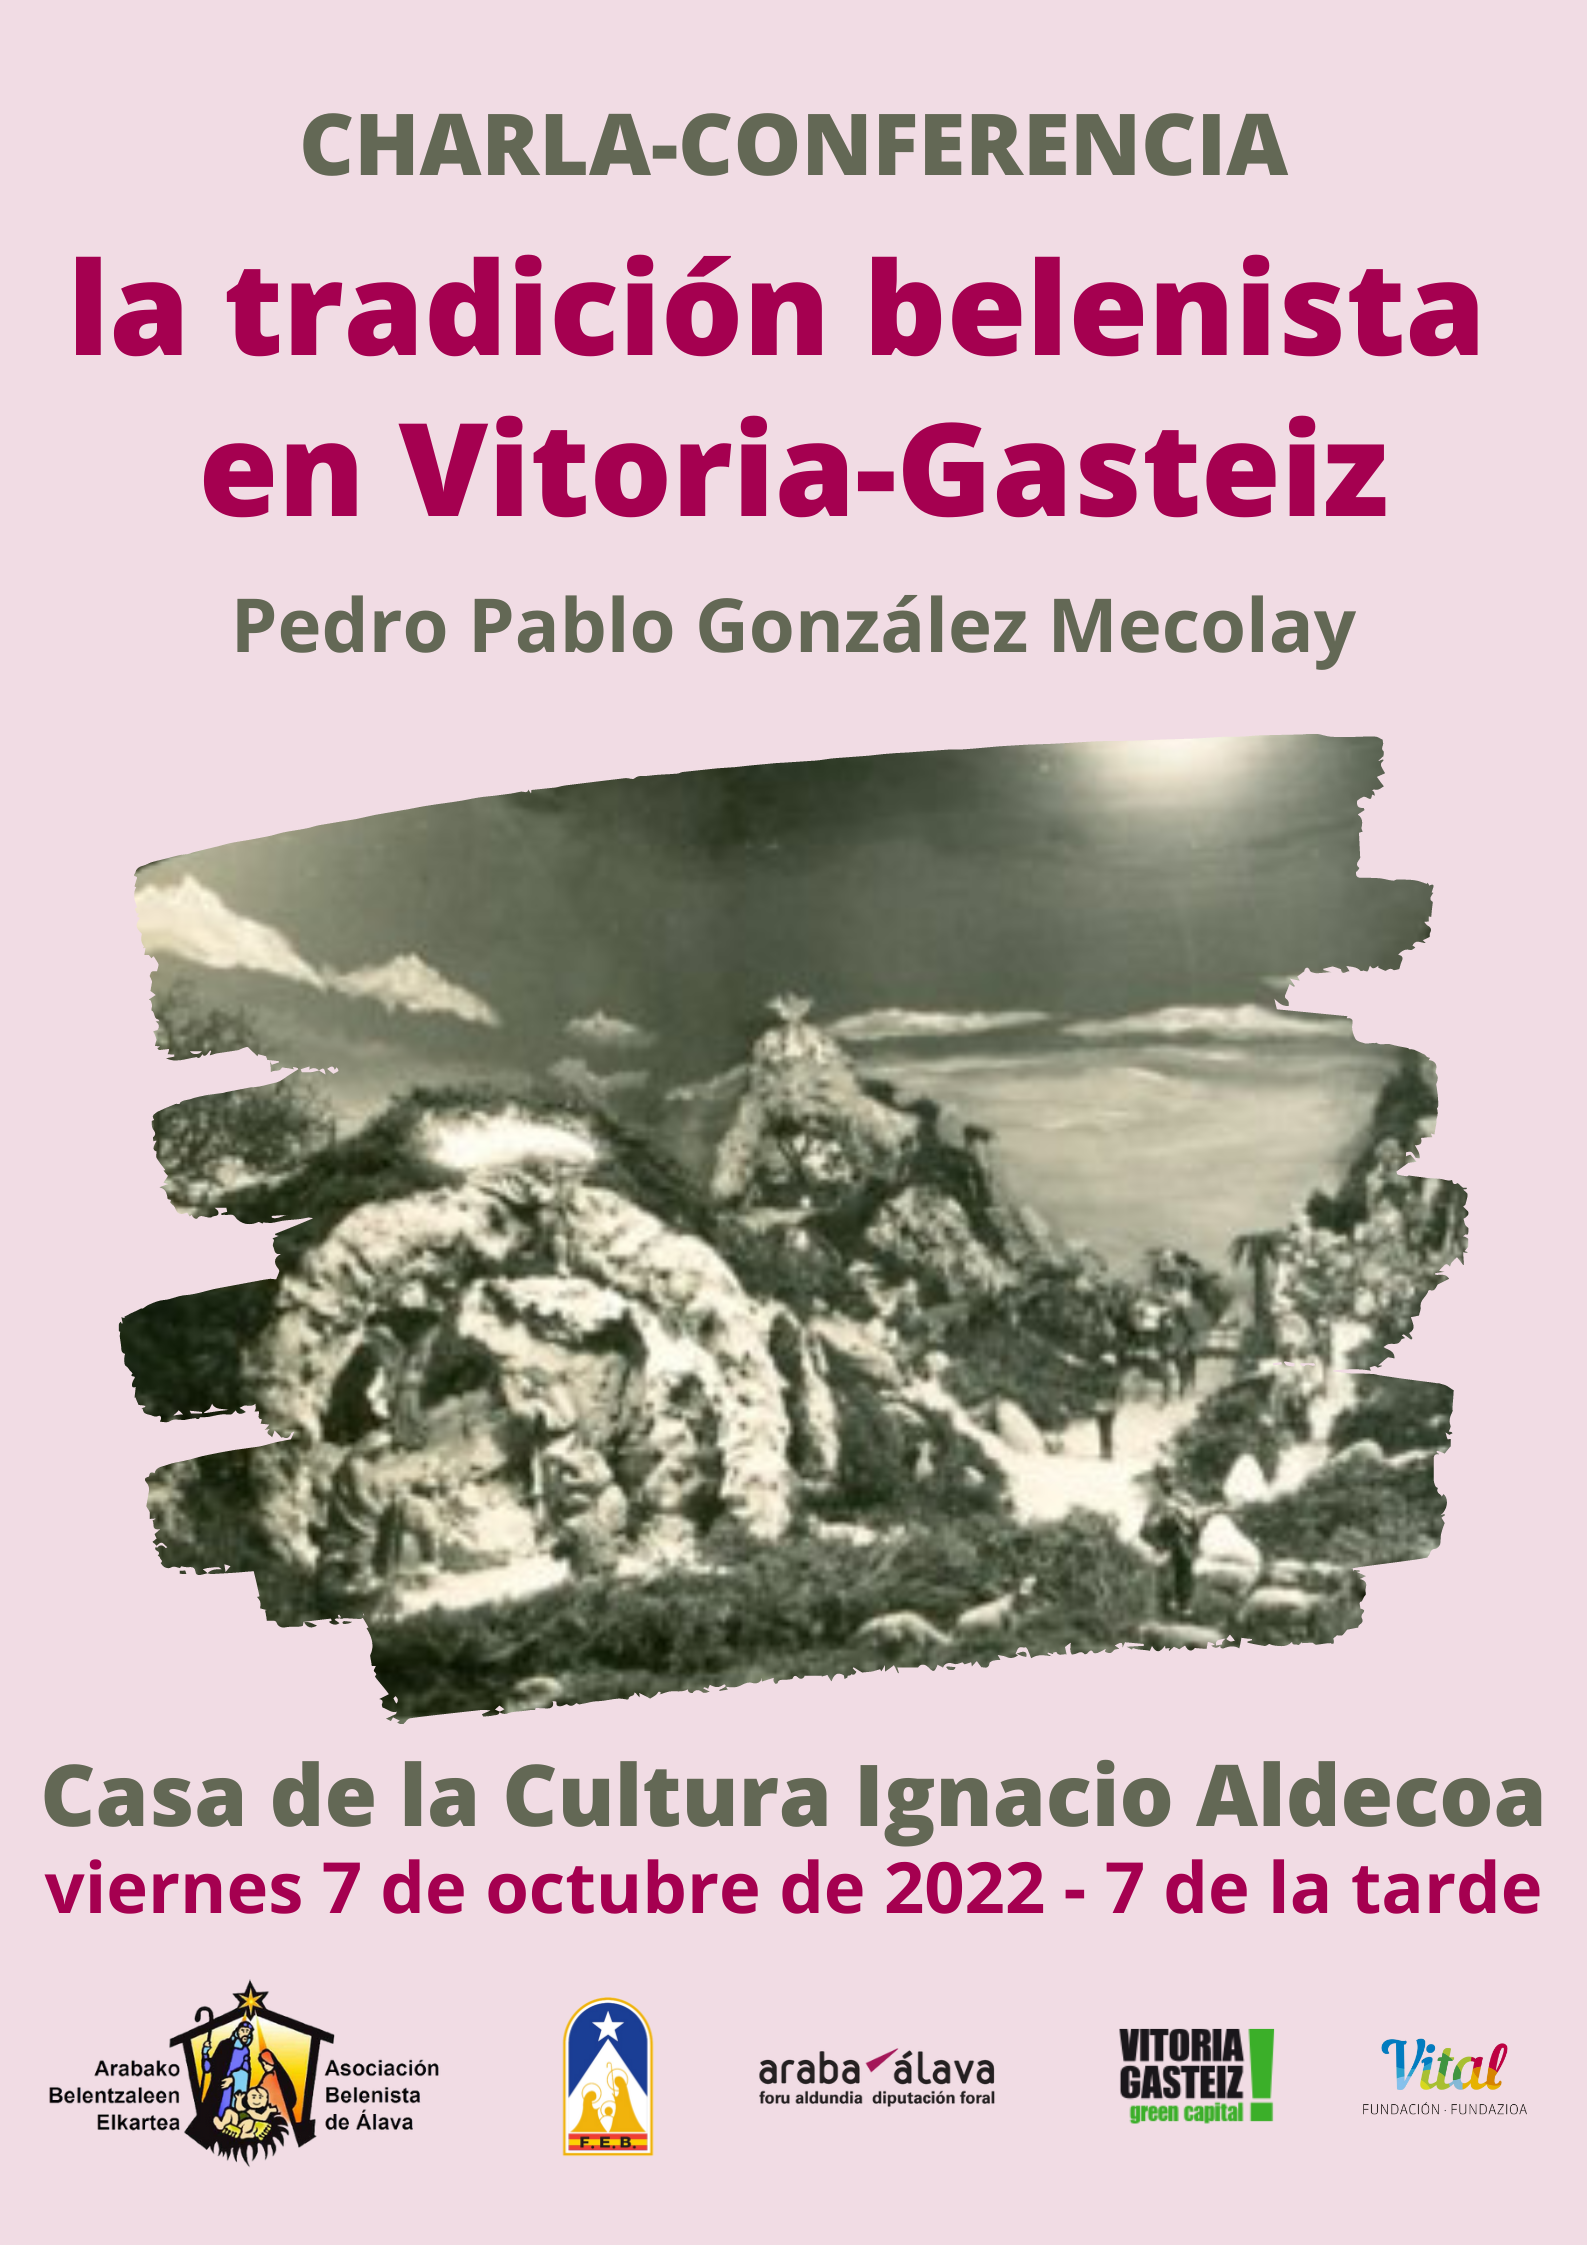 Cartel Charla-Conferencia "La tradición belenista de Vitoria-Gasteiz", impartida por Pedro Pablo González Mecolay y organizada por la Asociación Belenista de Álava